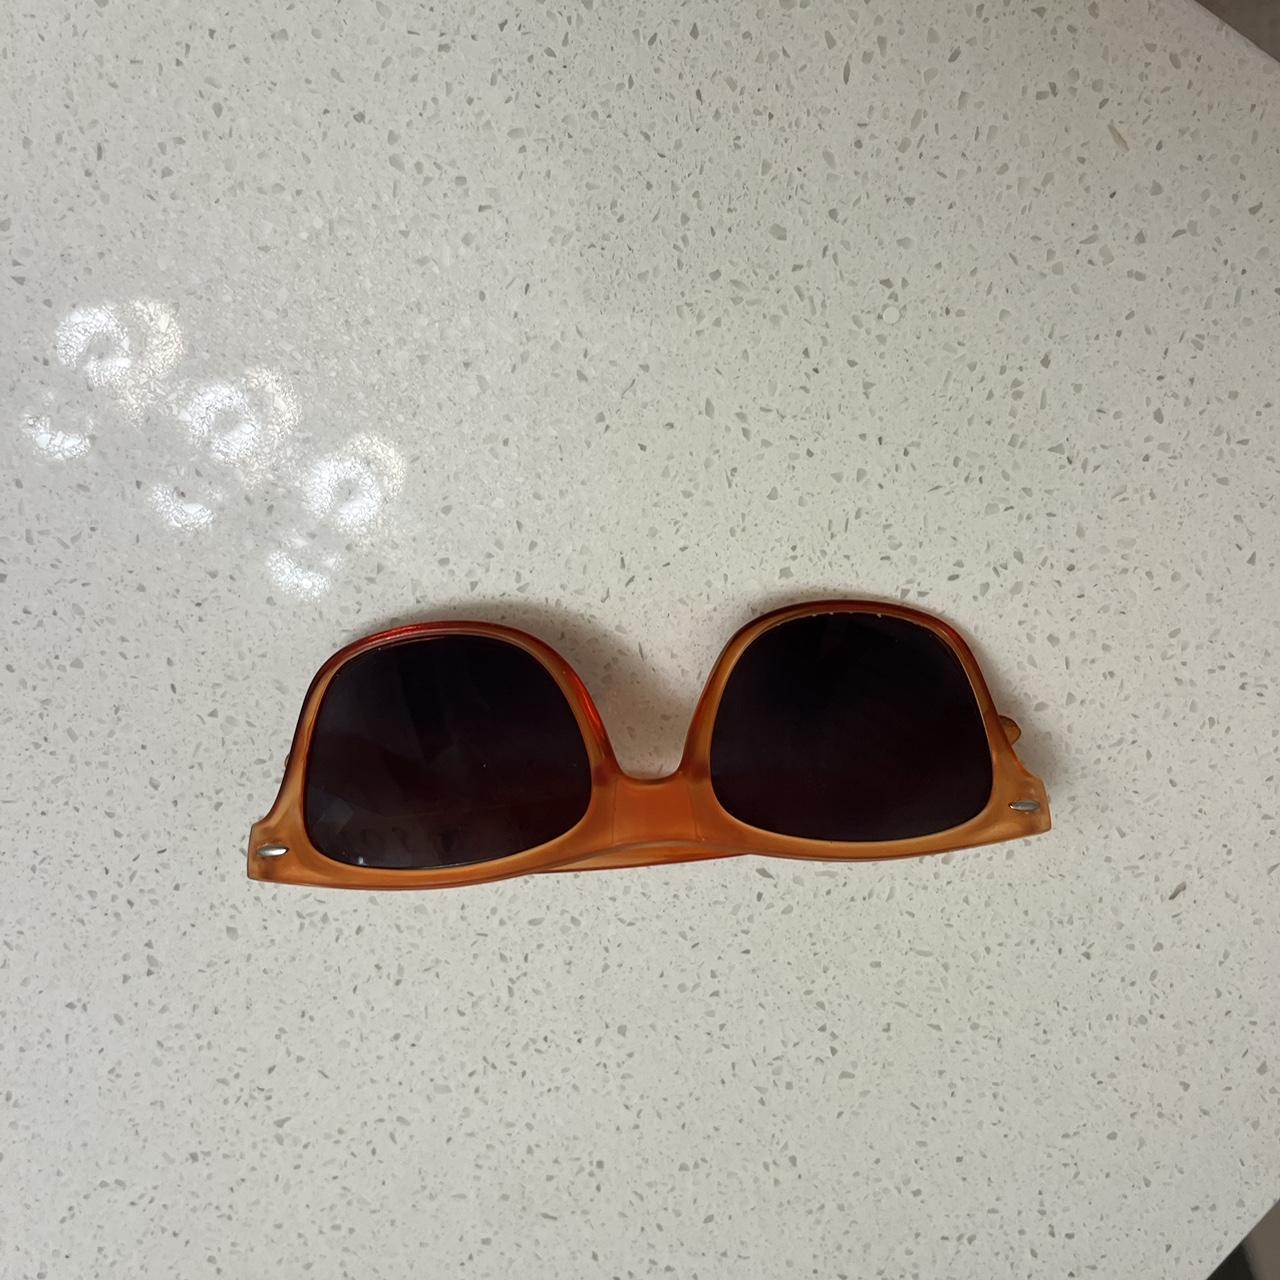 Titos Sunglasses - Depop